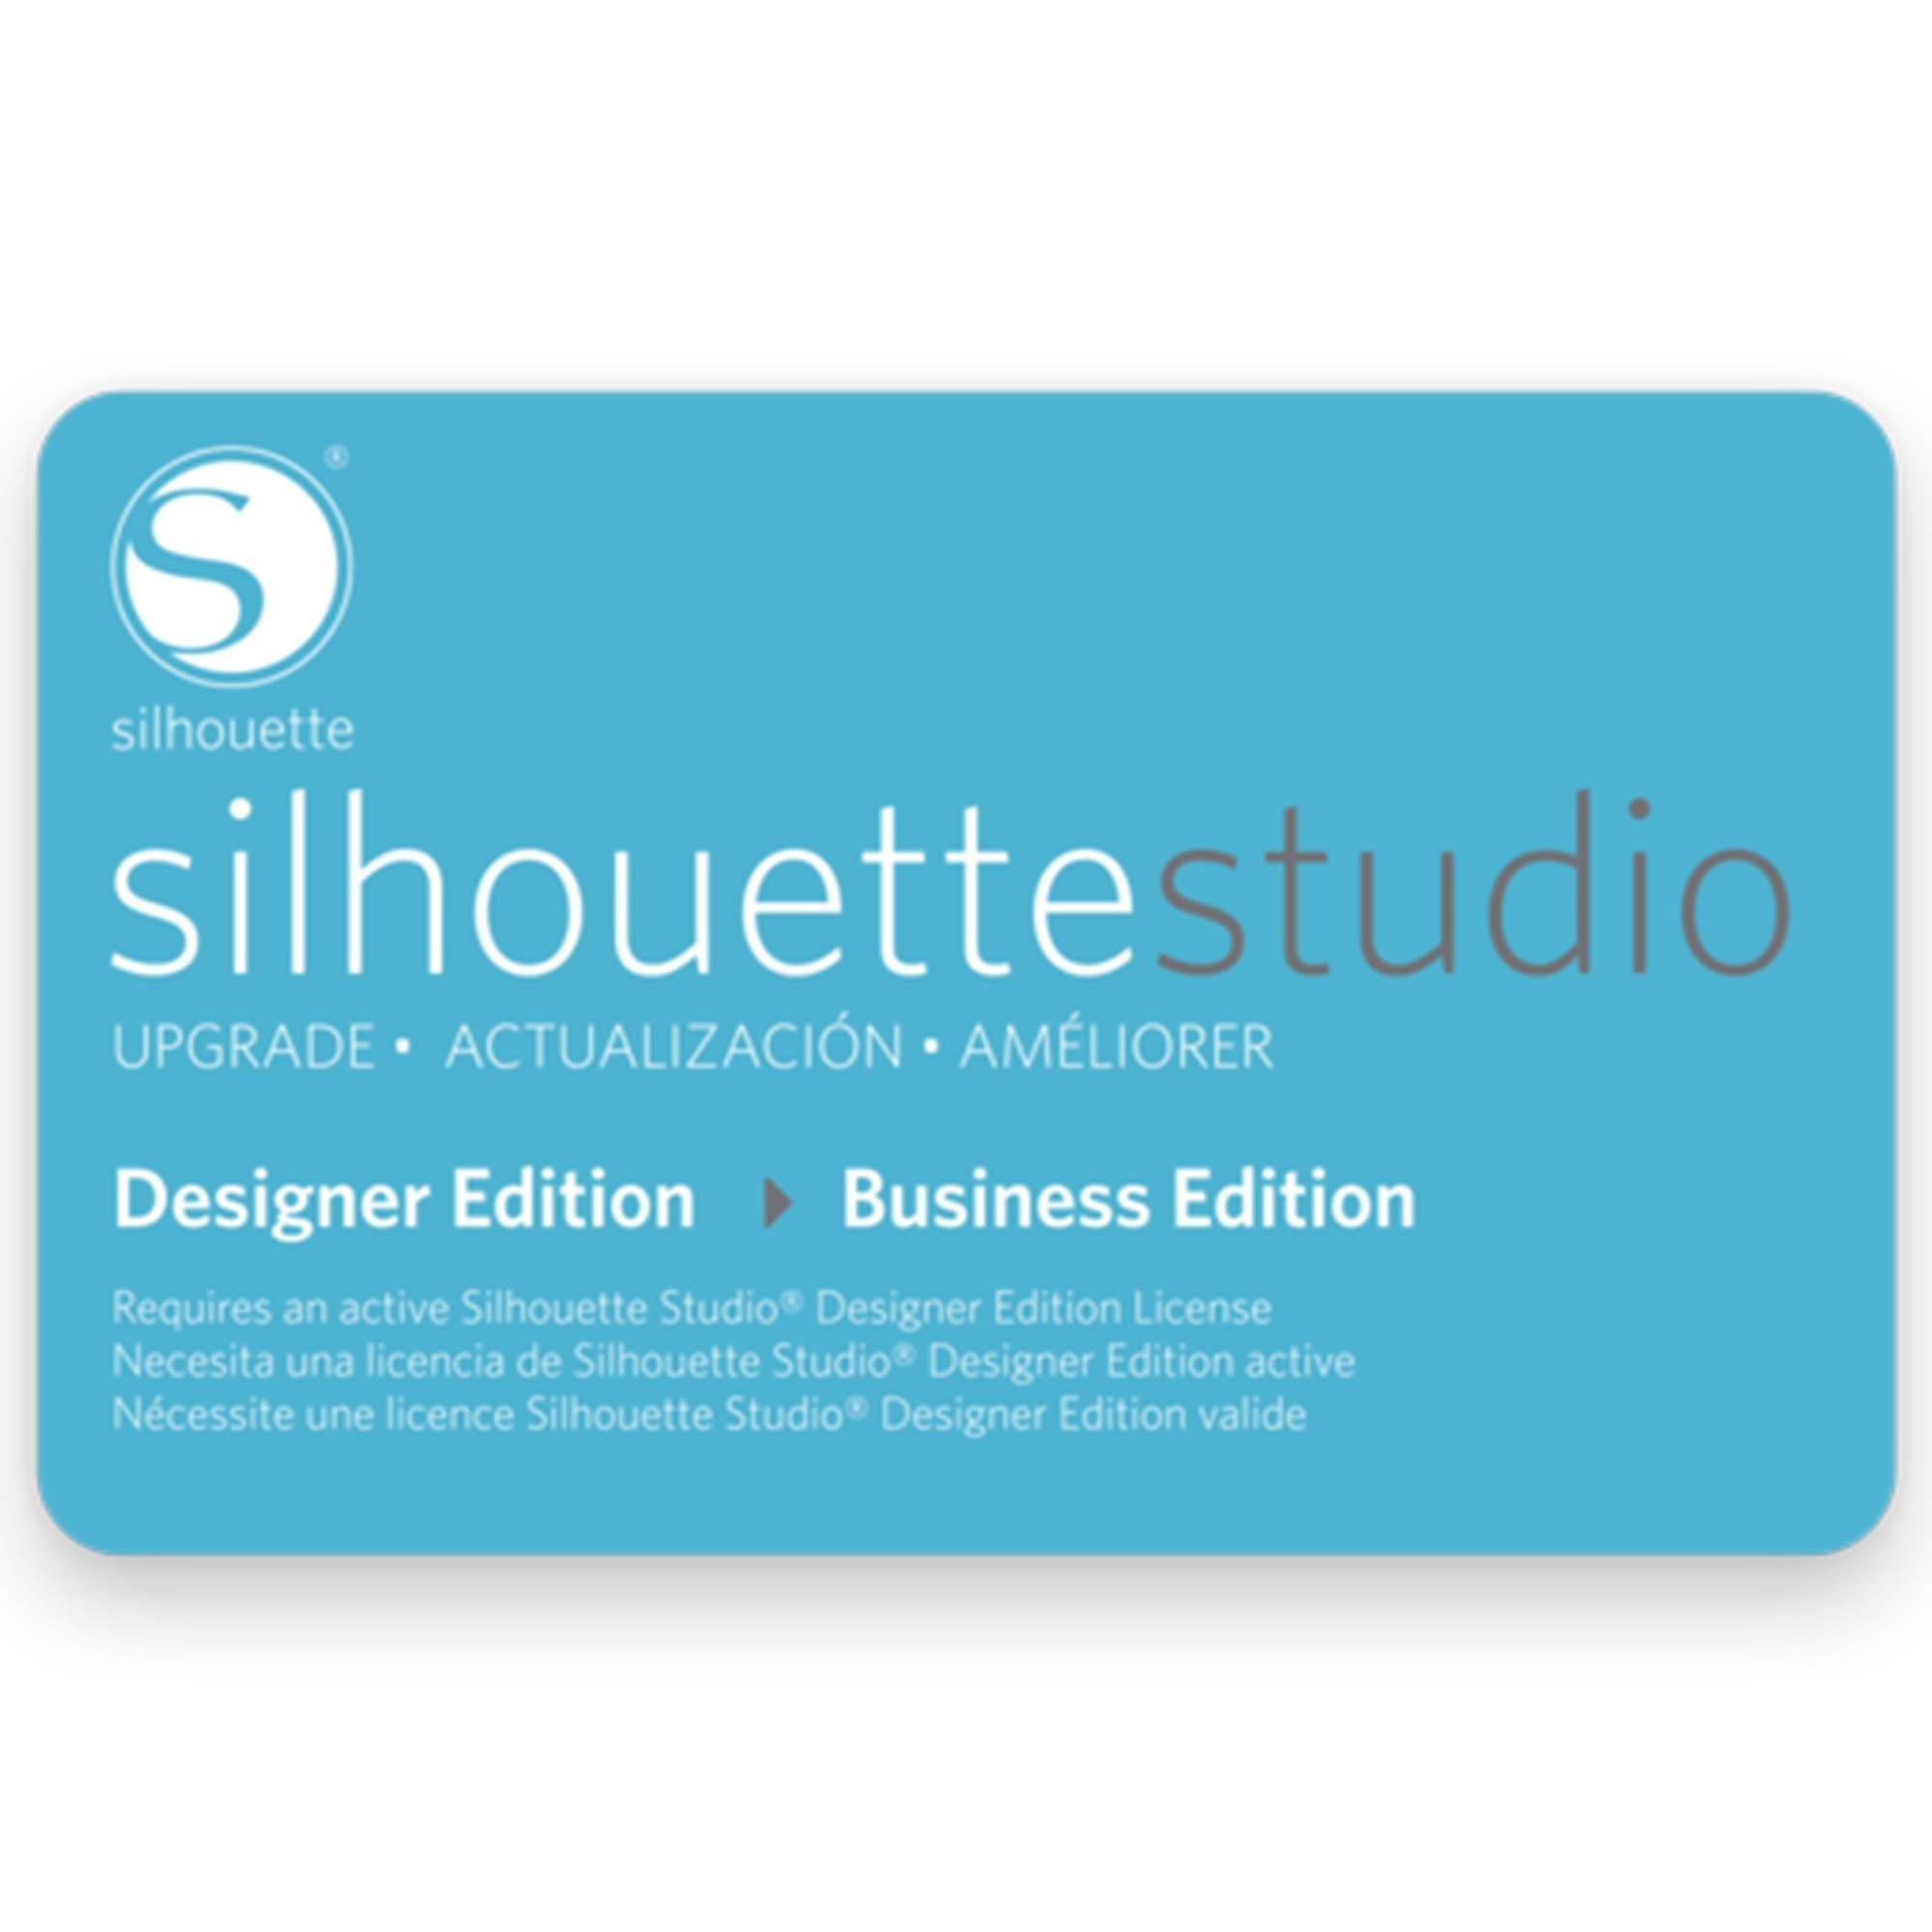 Silhouette Software Upgrade von Designer Edition auf Business Edition